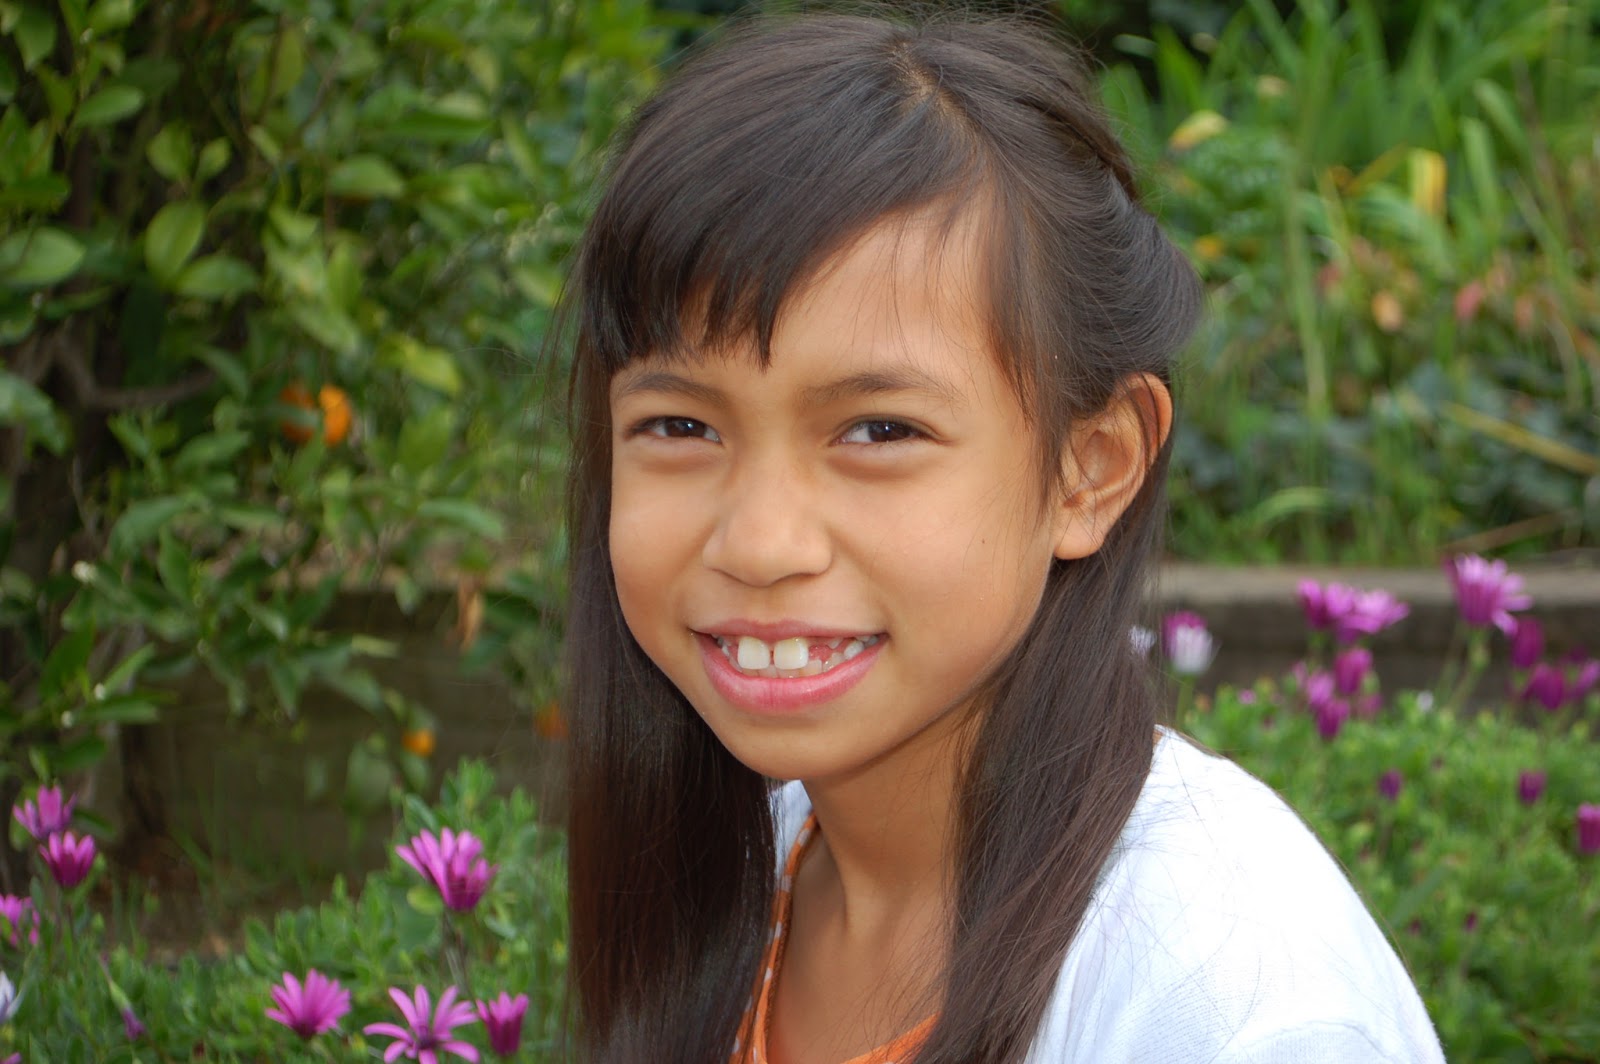 Av model video. Девочка Филиппины 10 лет. 144 Чан. Gracel Филиппины. Hmm тайки.